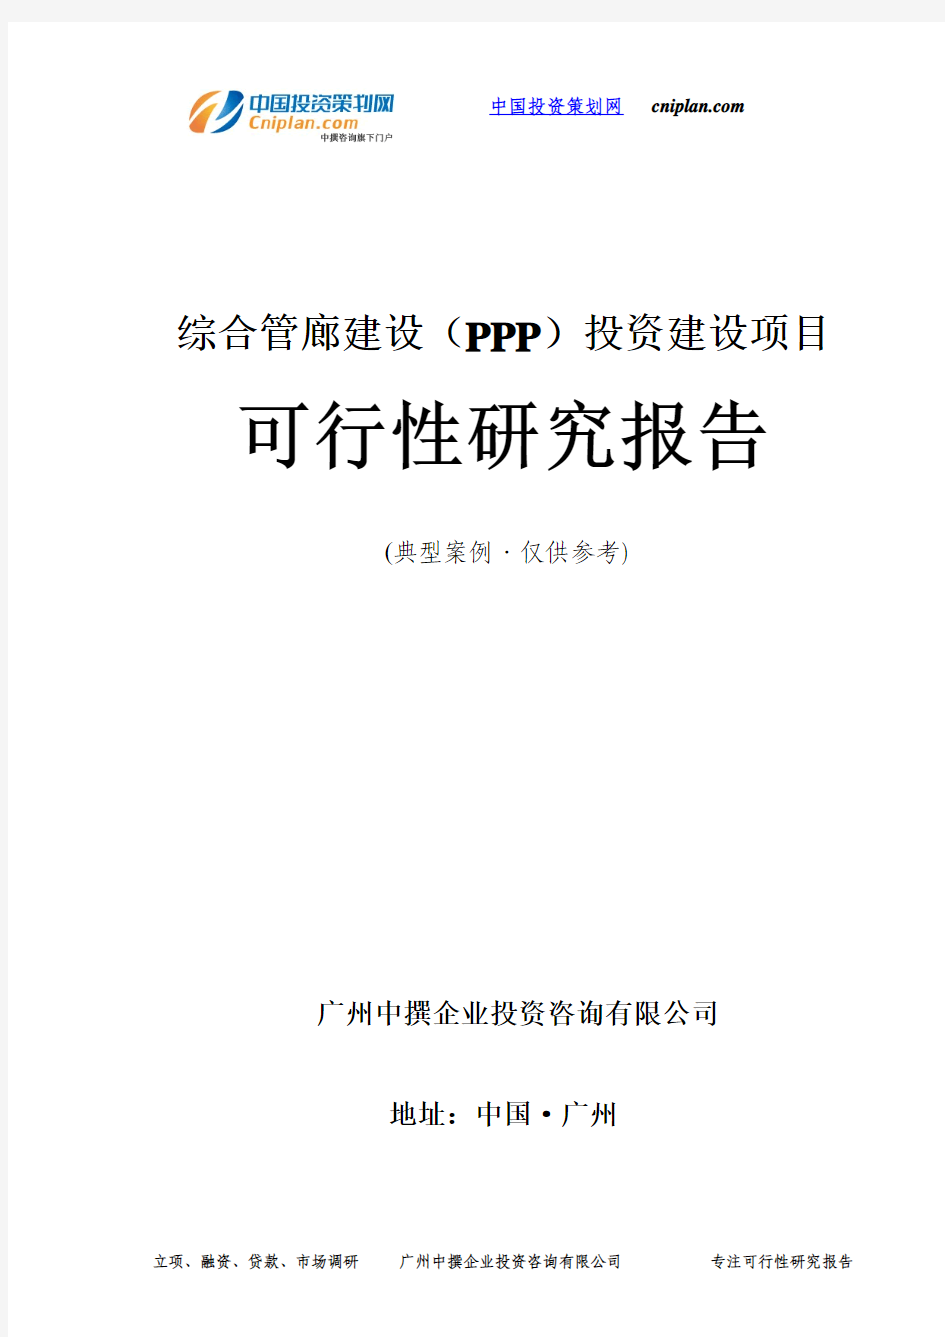 综合管廊建设(PPP)投资建设项目可行性研究报告-广州中撰咨询